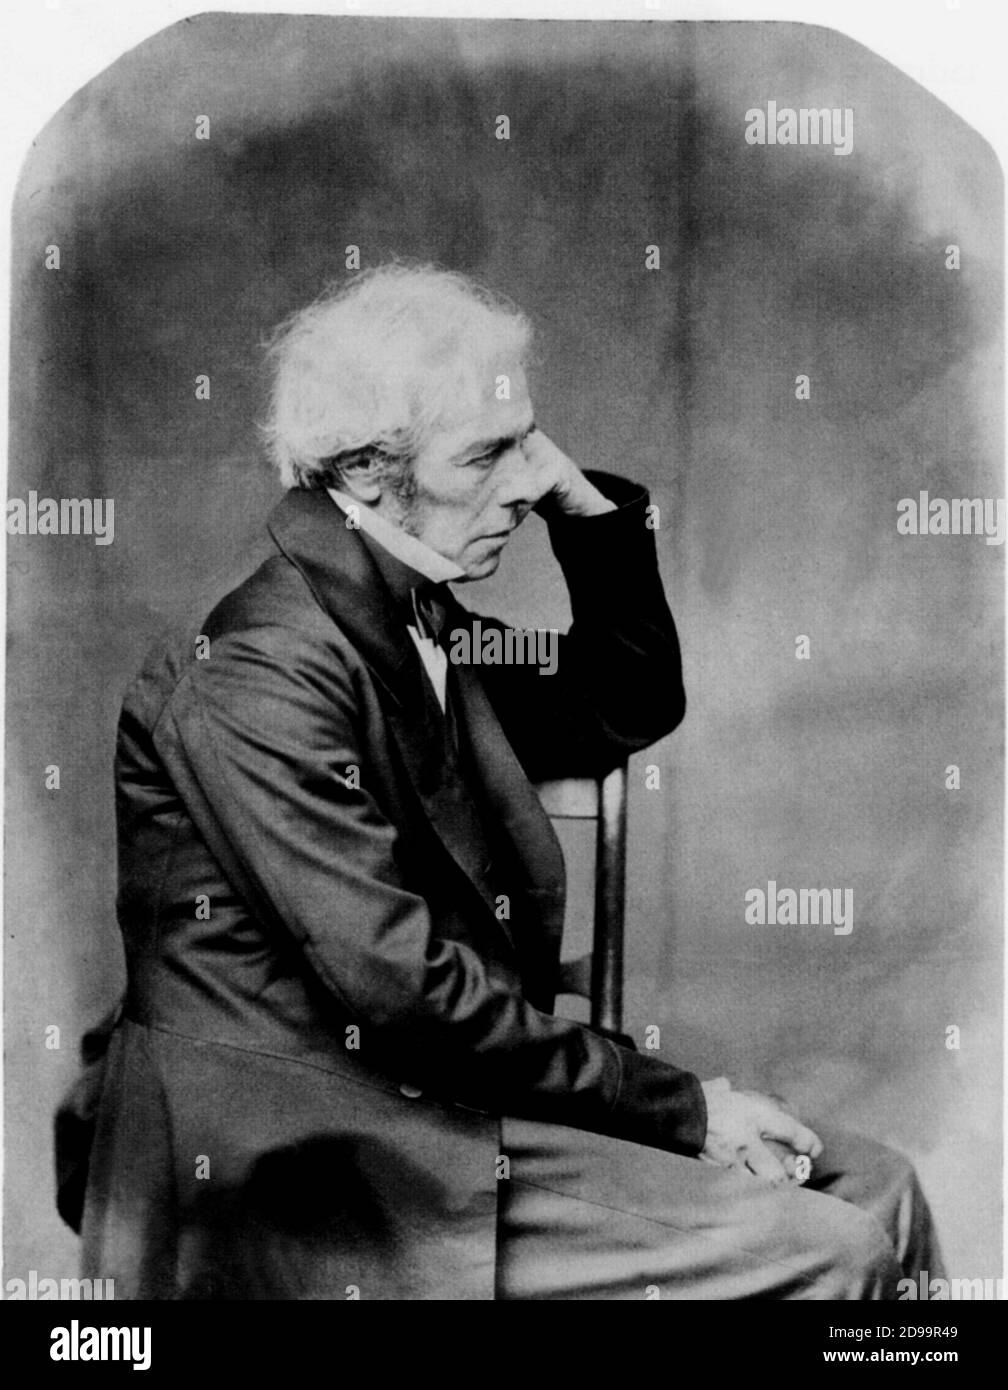 1860 , 30 de junio : El físico inglés MICHAEL FARADAY ( Newington Butts 1791 - Hampton Court , Londres 1867 ) , Científico , descubrir el Campamento eléctrico ( 1821 ) y el Campamento magnético ( 1831 ) , creó el Lay de la electrólisis y descubrir el efecto Faraday en la Luz polarizada . Retrato del famoso fotógrafo , matemático y escritor LEWIS CARROLL ( 1832 - 1898 ) autor de ' Alice in Wonderland ' ( 1865 ) - SCIENZA - CIENCIA - SCIENZIATO - FISICO - FISICA - CAMPO ELETTRICO - LEGGE DELL' ELETTROLISI - EFFETTO FARADAY NELLA LUCE POLARIZZATA - QUIMICA - QUÍMICA --- ARCHIVIO GBB Foto de stock